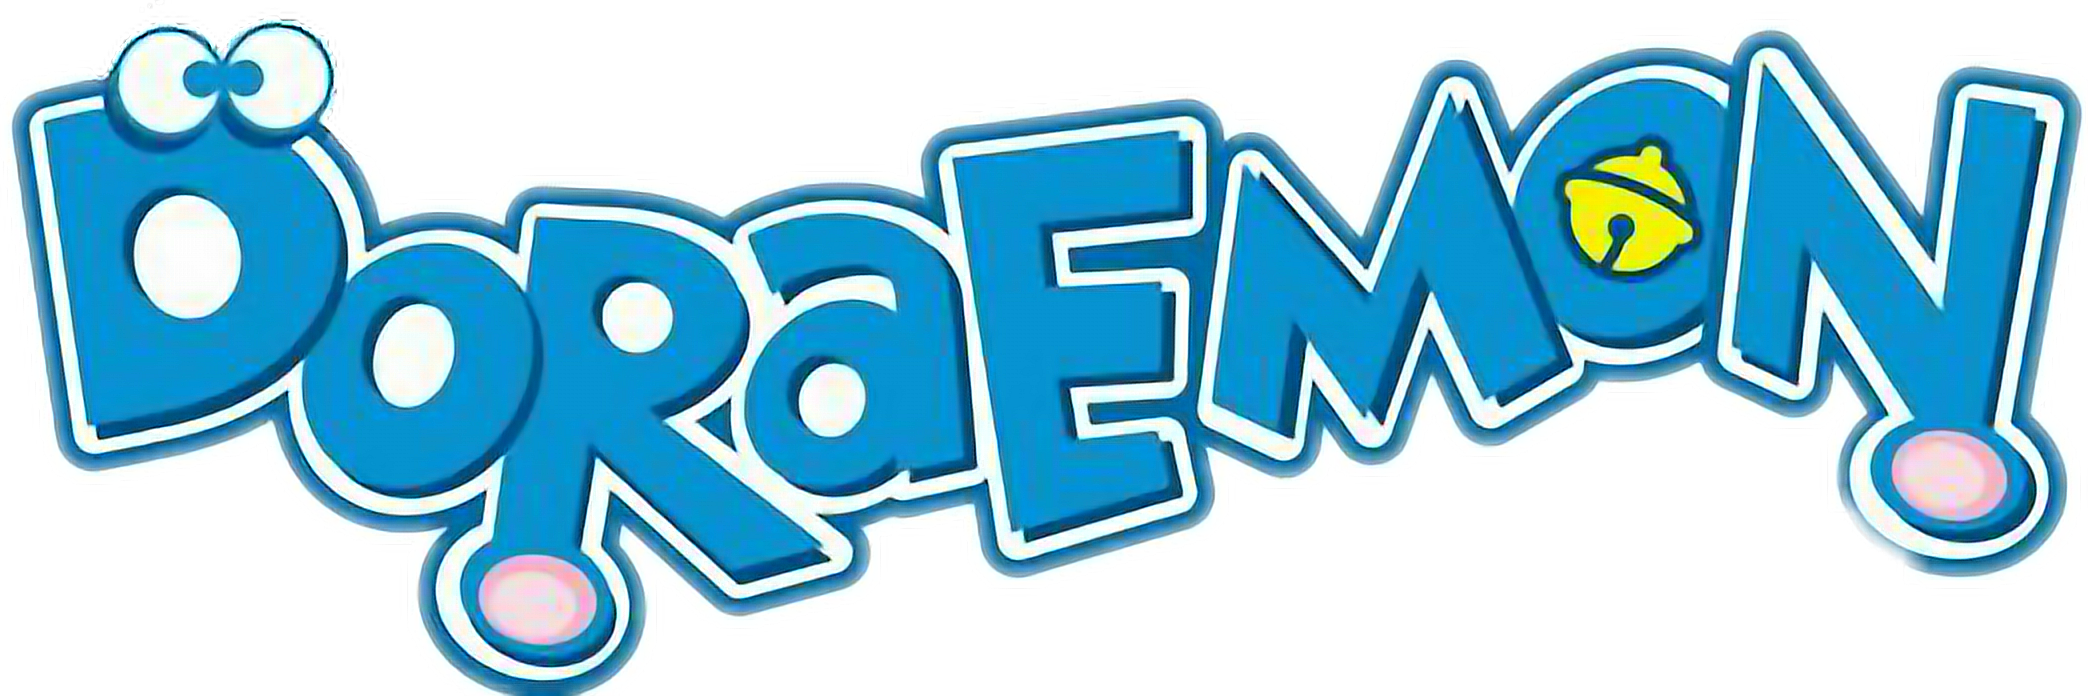 Doraemon logo PNG Bild